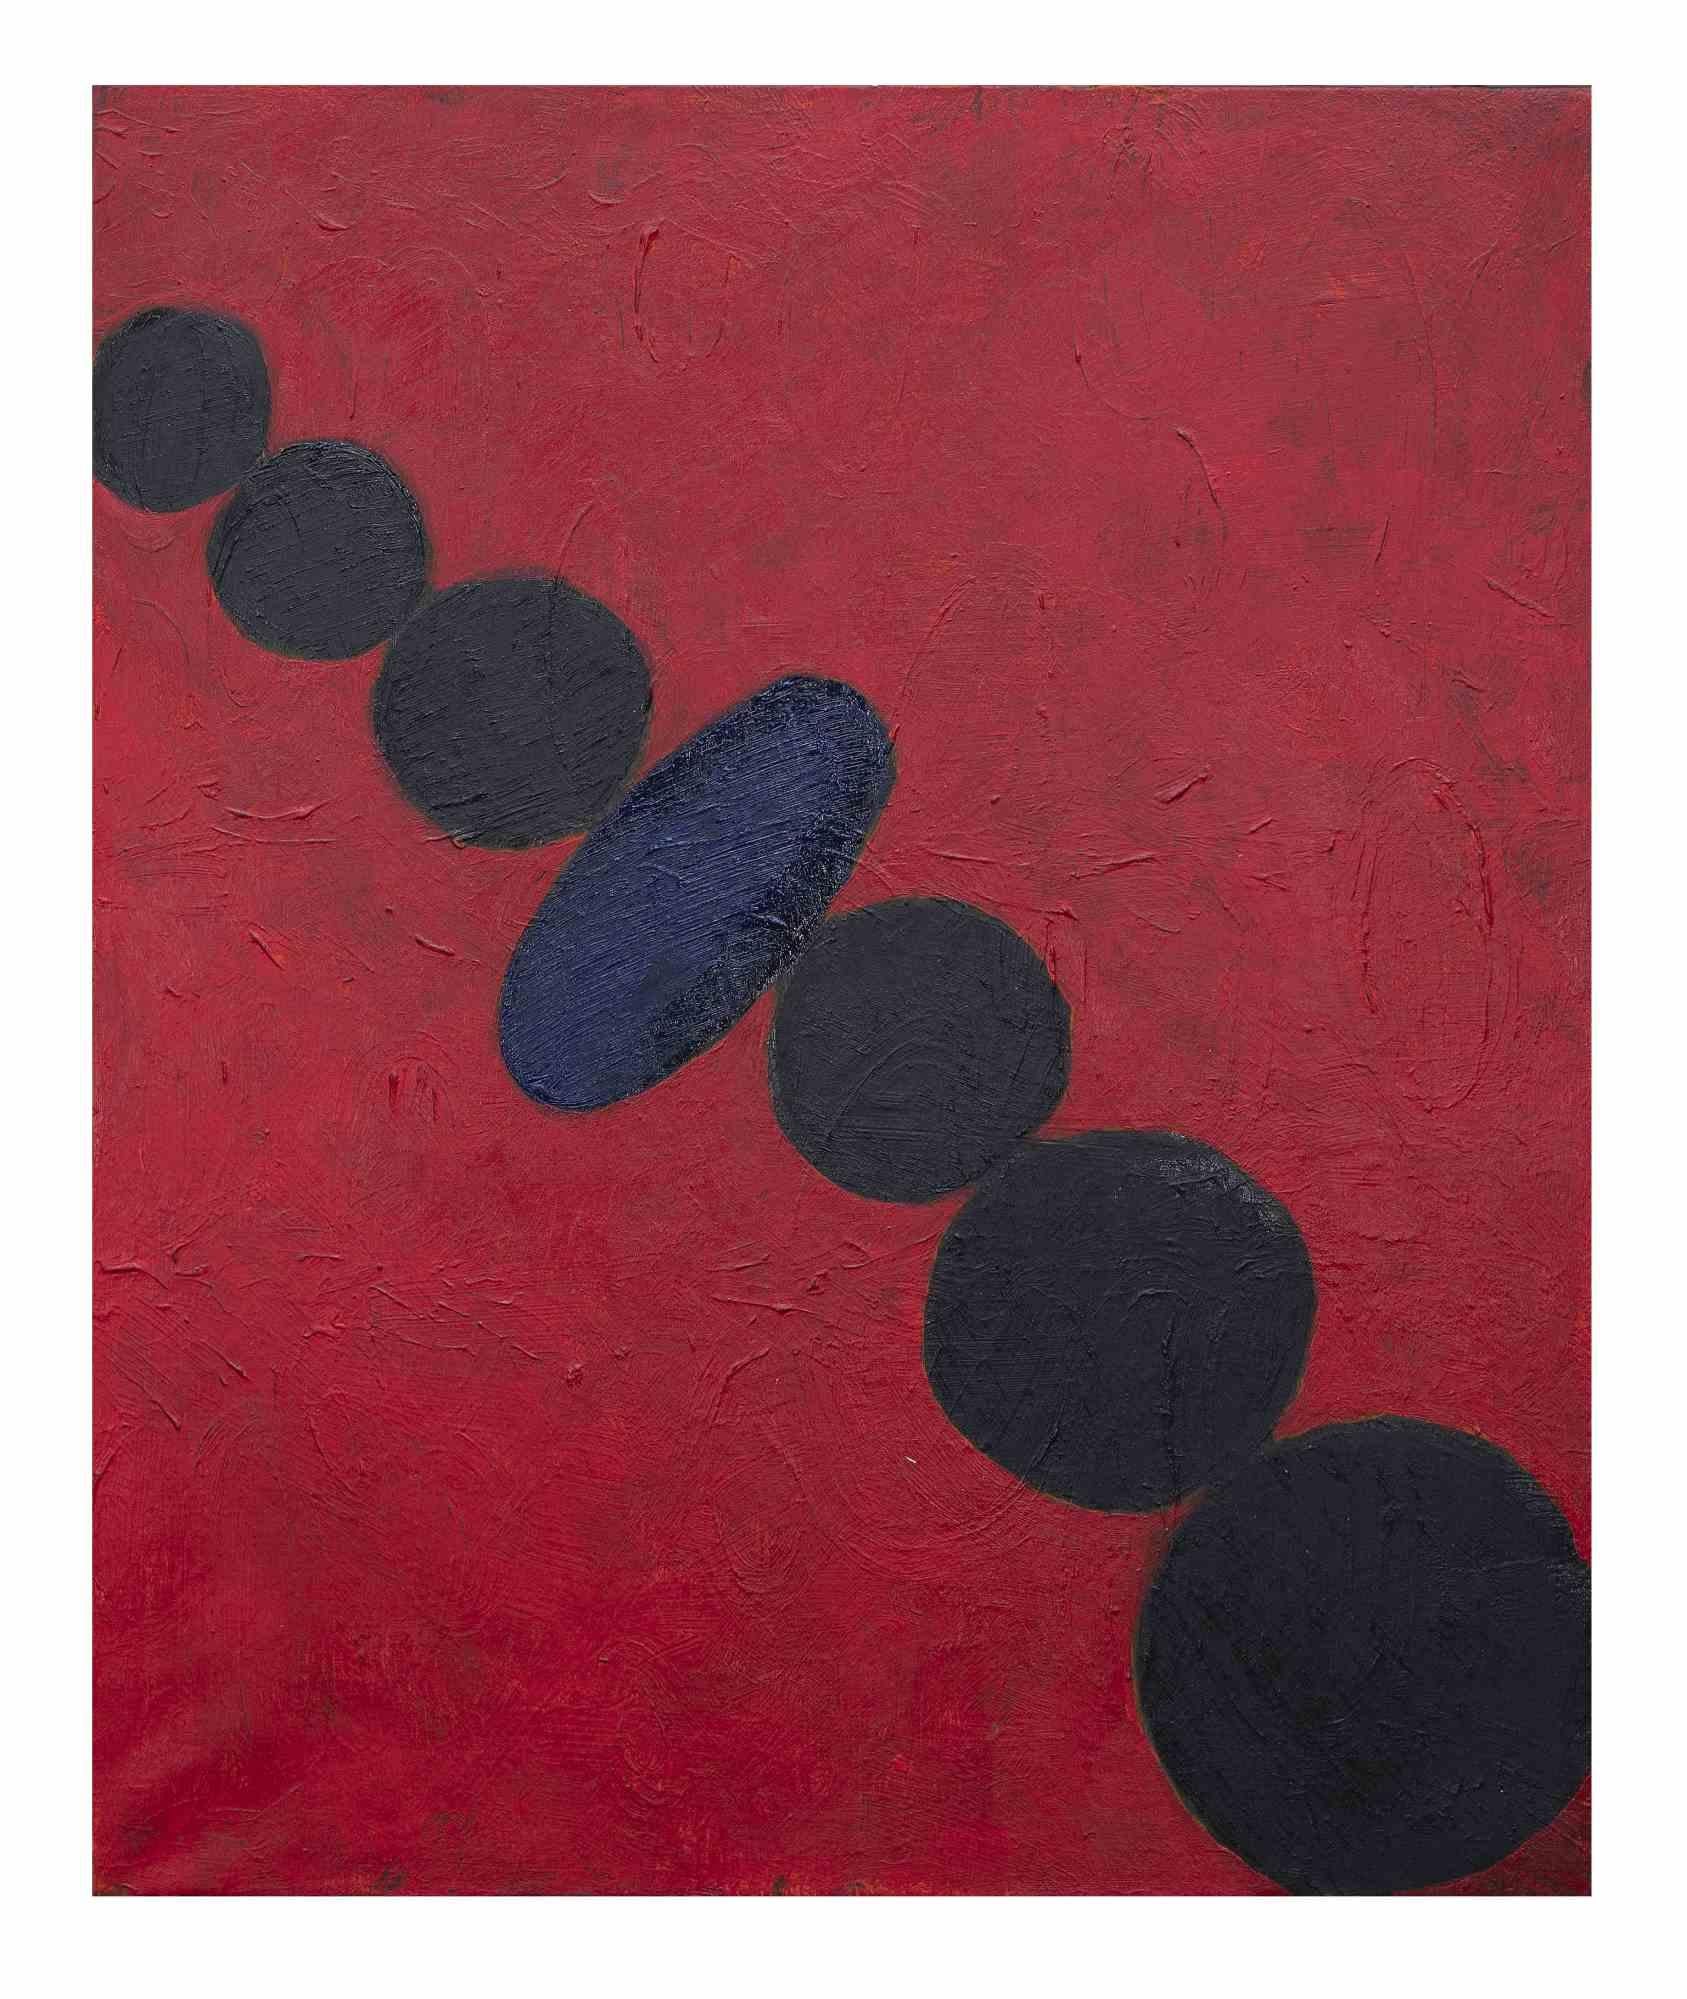 Circles - Oil On Canvas by Giorgio Lo Fermo - 2010 2